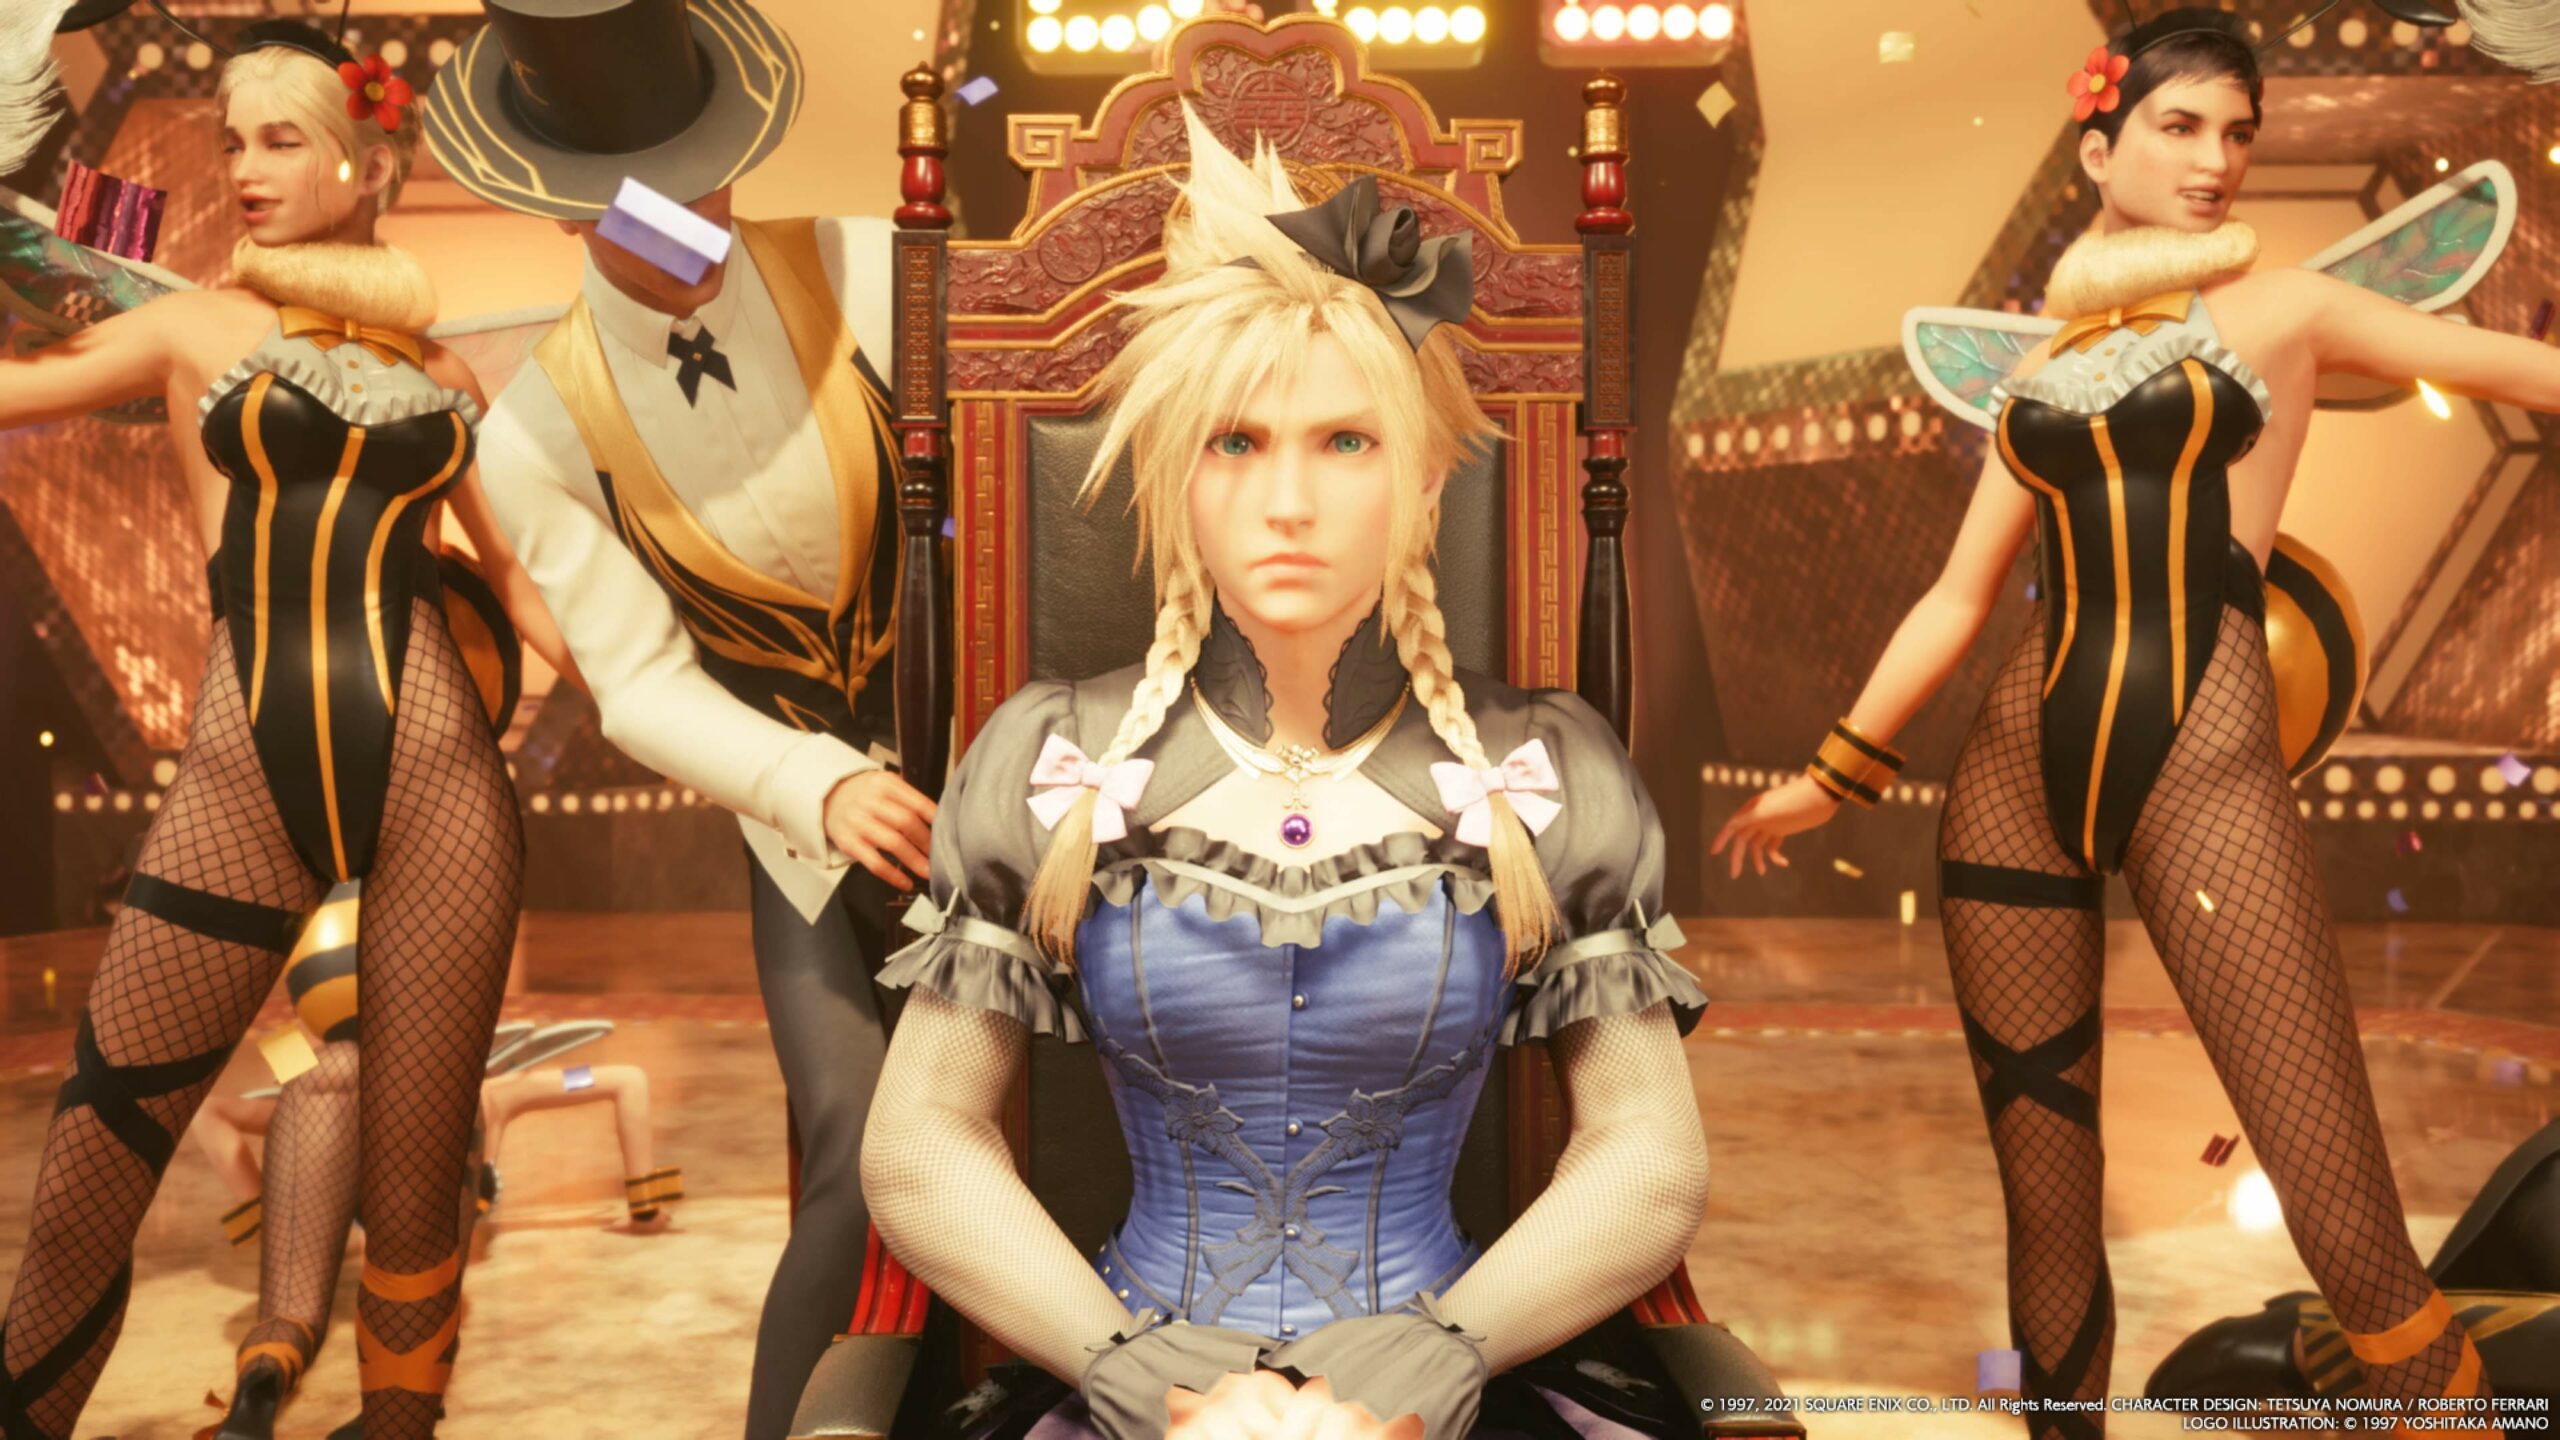 #Square Enix feiert 25 Jahre Final Fantasy VII mit neuen NFT-Sammelkarten